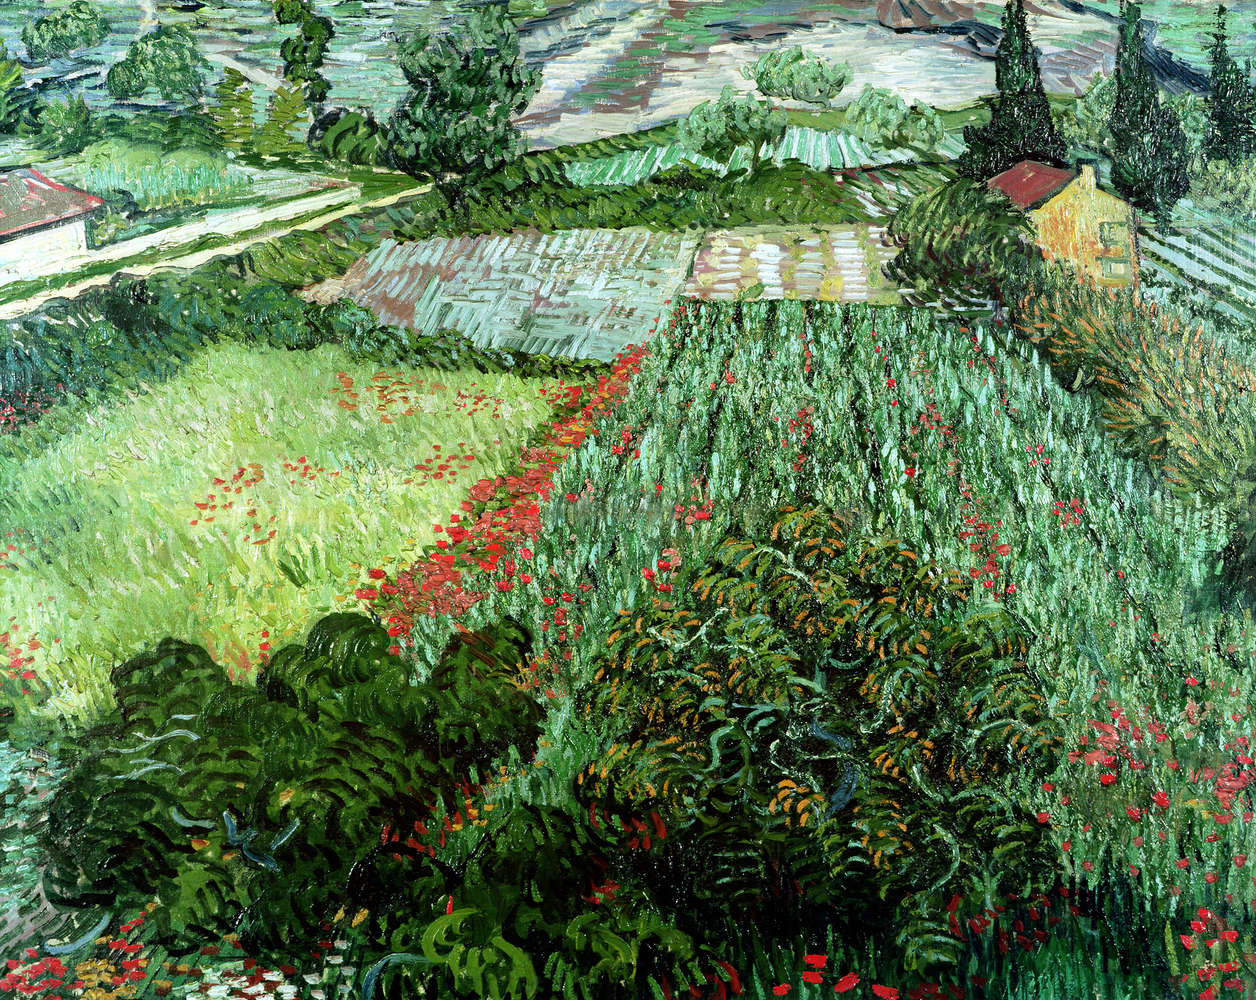             Mural "Campo con amapolas" de Vincent van Gogh
        